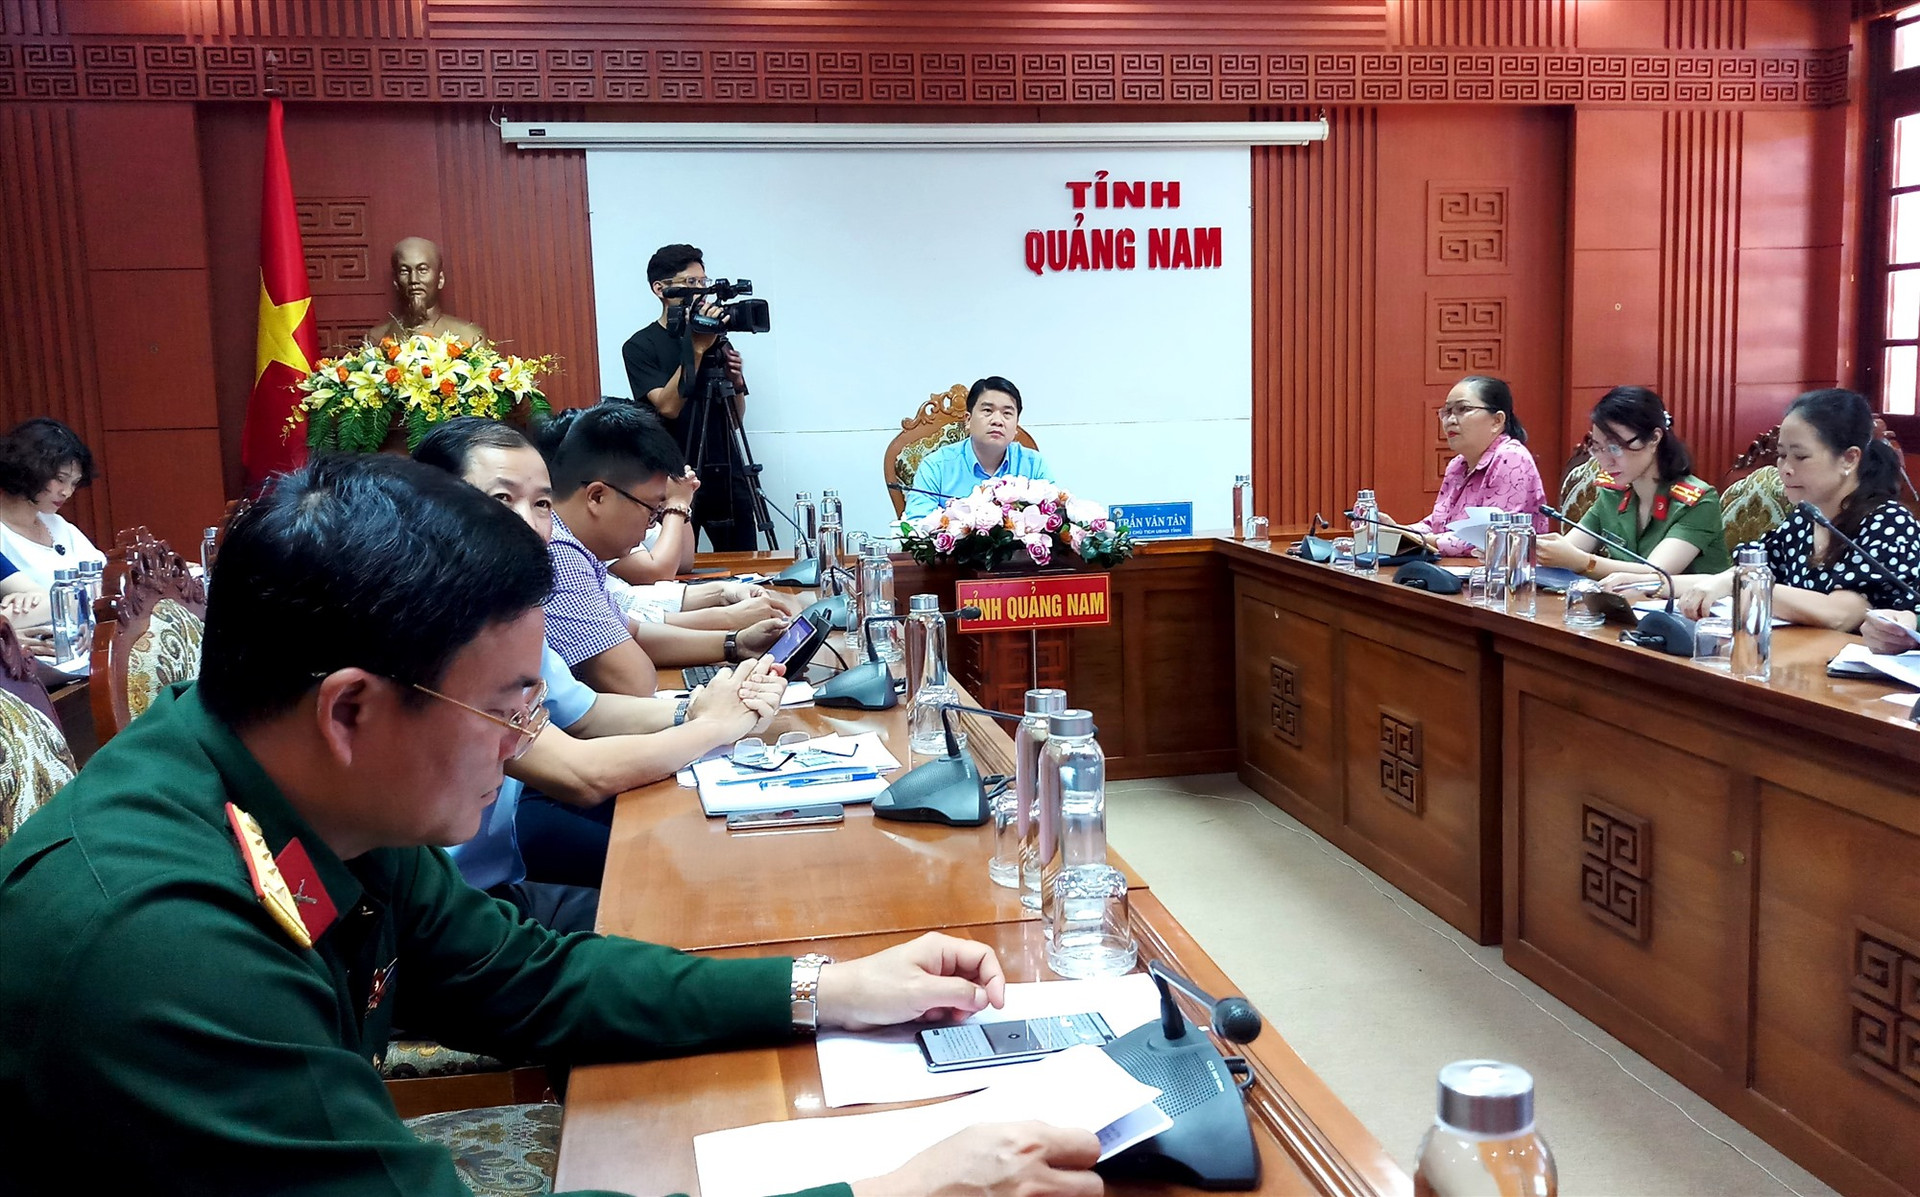 Phó Chủ tịch UBND tỉnh Trần Văn Tân tham dự cuộc họp tại điểm cầu Quảng Nam. Ảnh: A.N